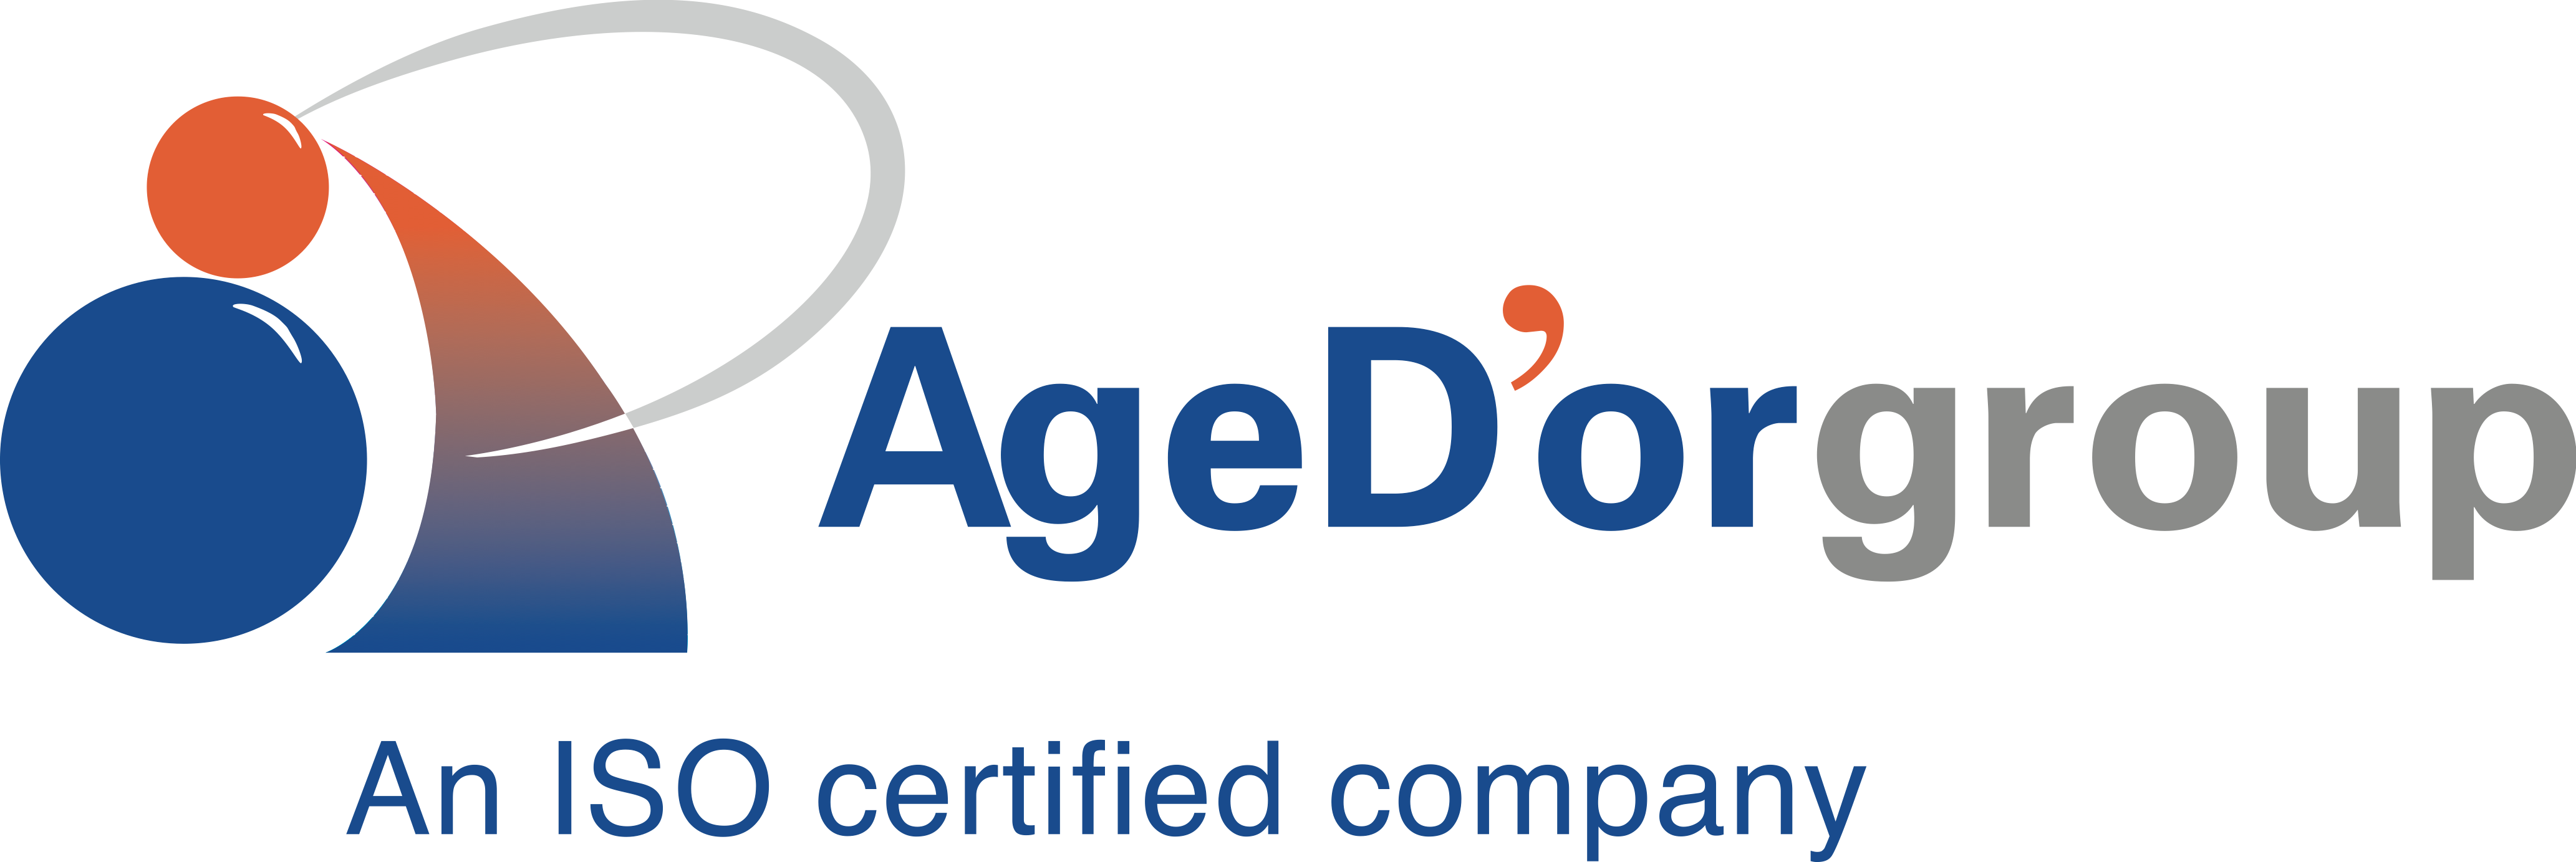 Age D'or Pte Ltd